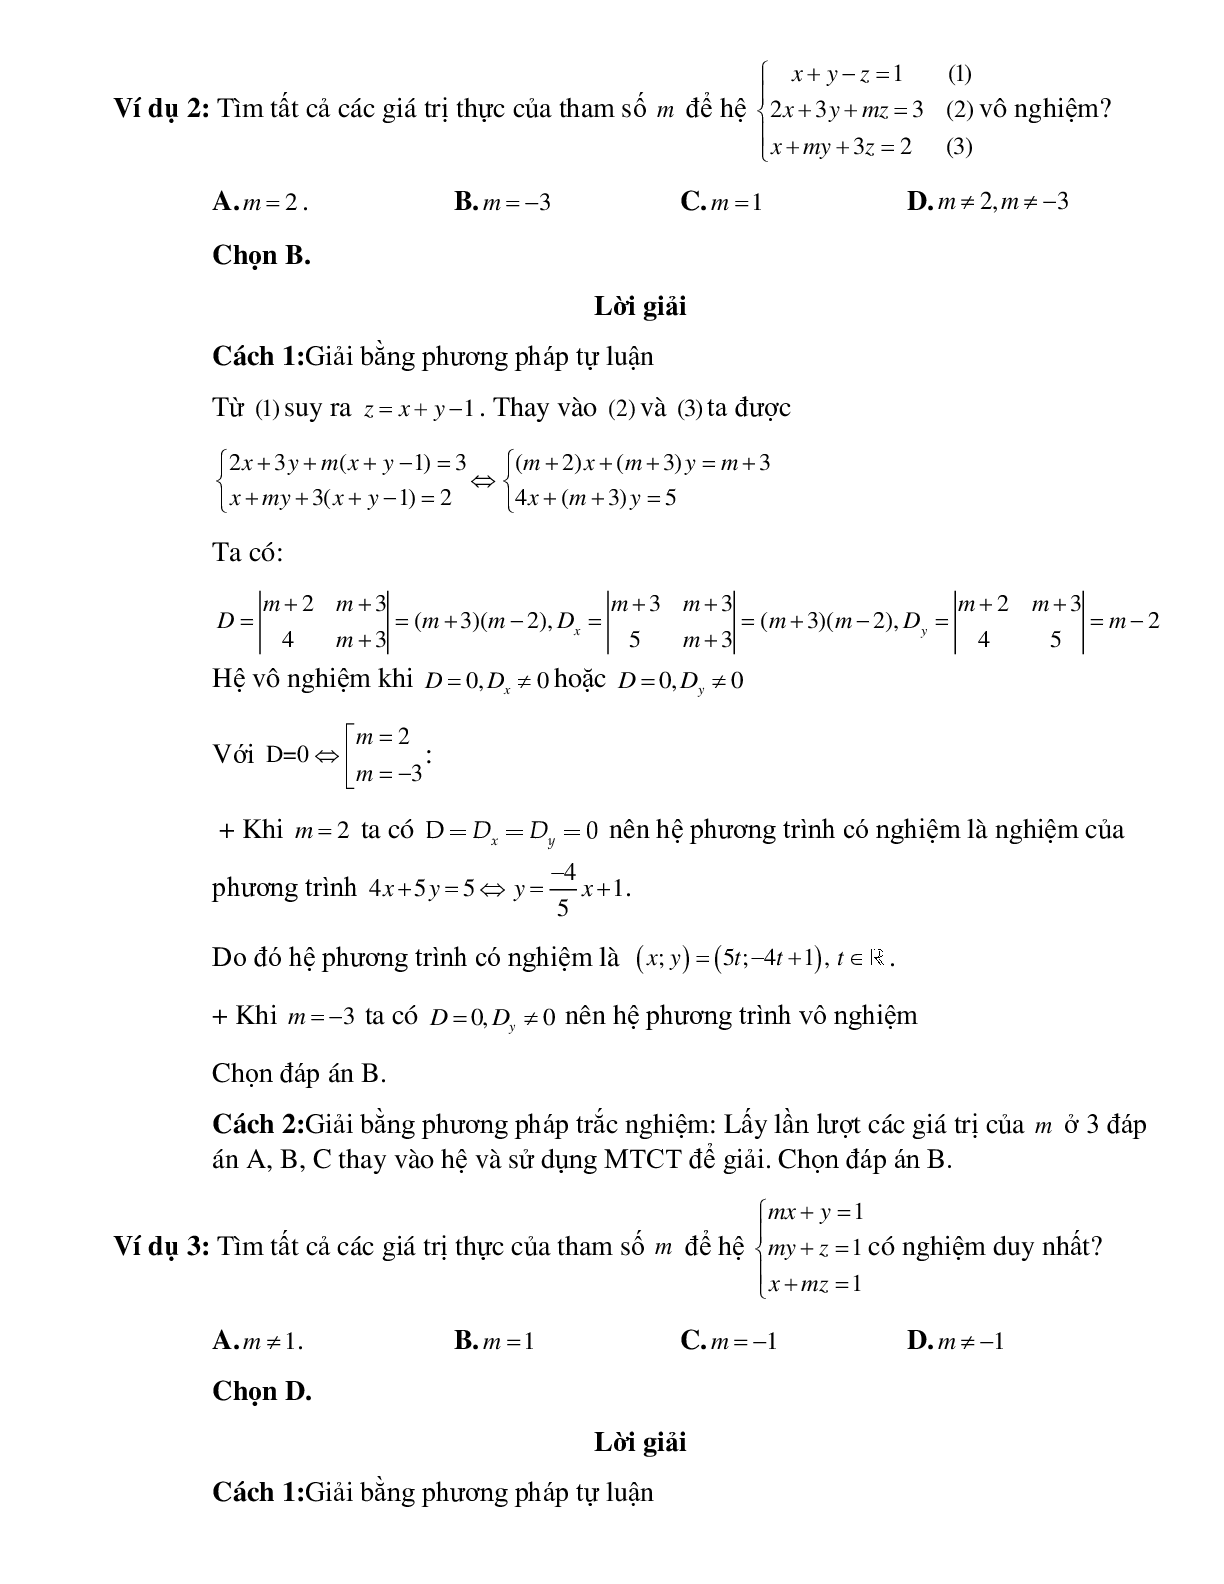 Tìm điều kiện của tham số đề hệ ba phương trình bậc nhất ba ẩn có nghiệm thỏa mãn điều kiện cho trước (trang 2)